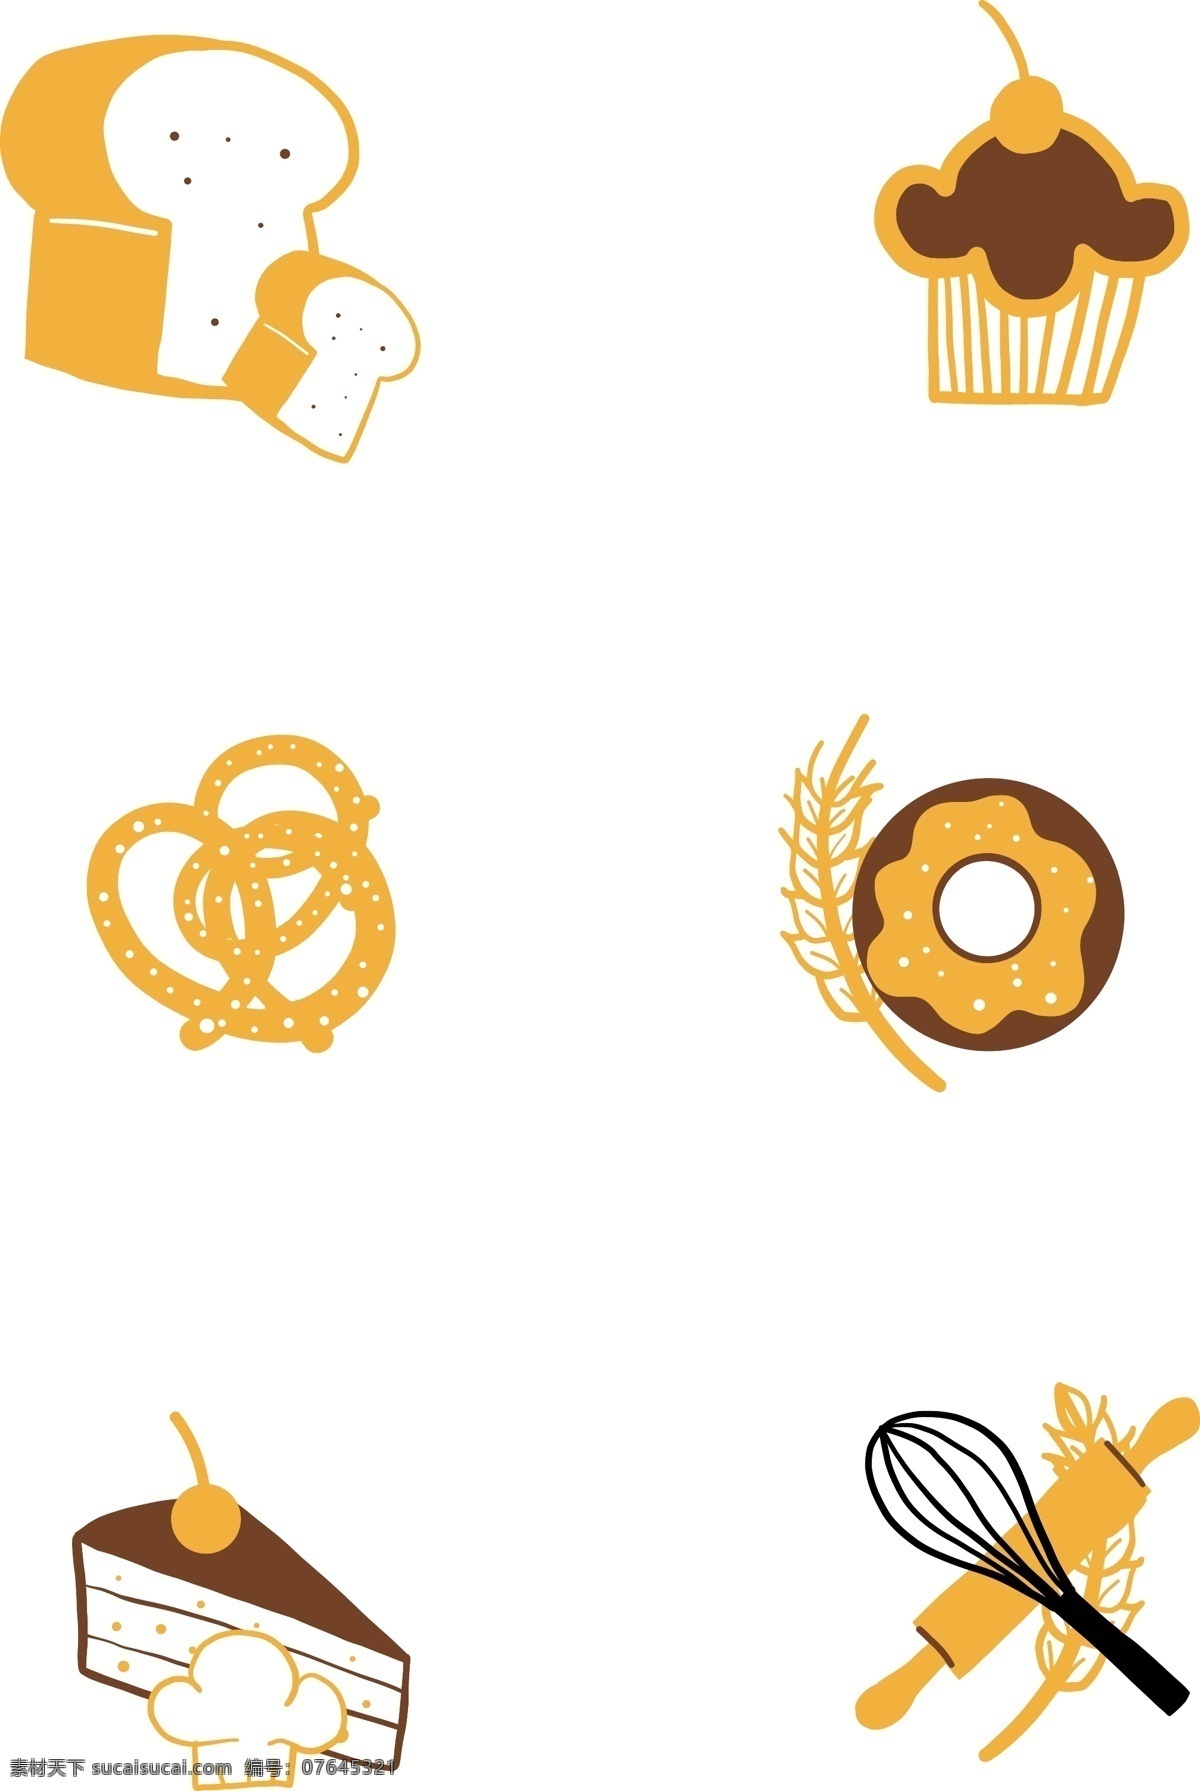 面包 食物 简约 装饰 图案 甜品 卡通 面包圈 背景